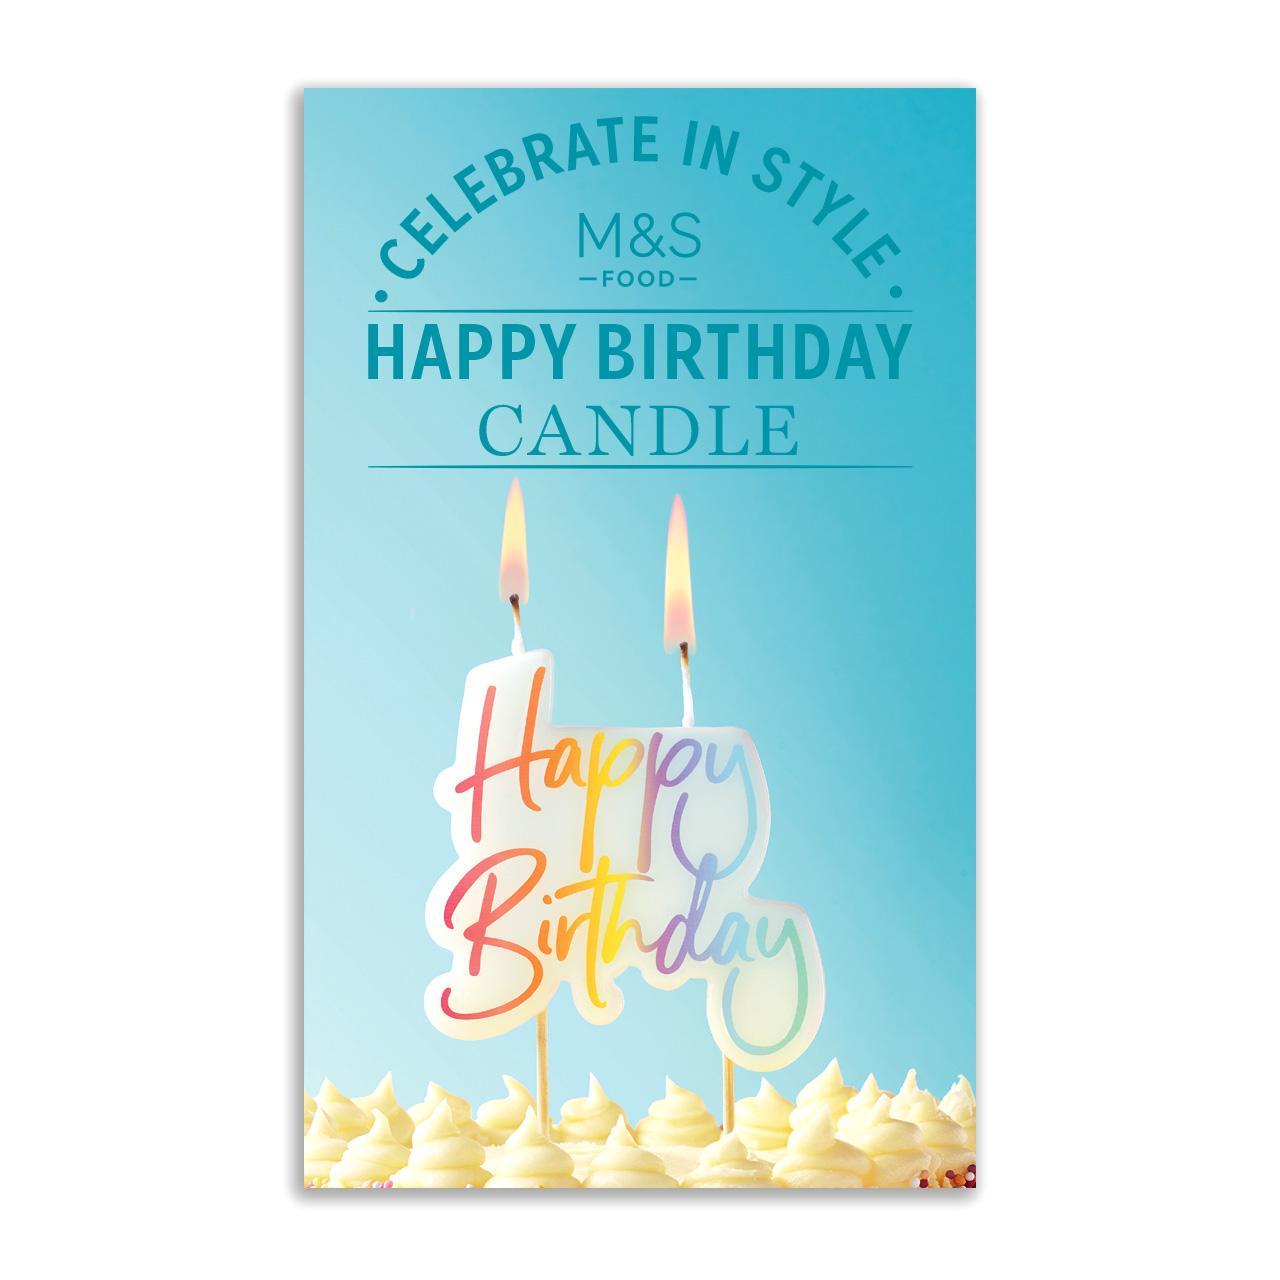 M&S Happy Birthday Candle